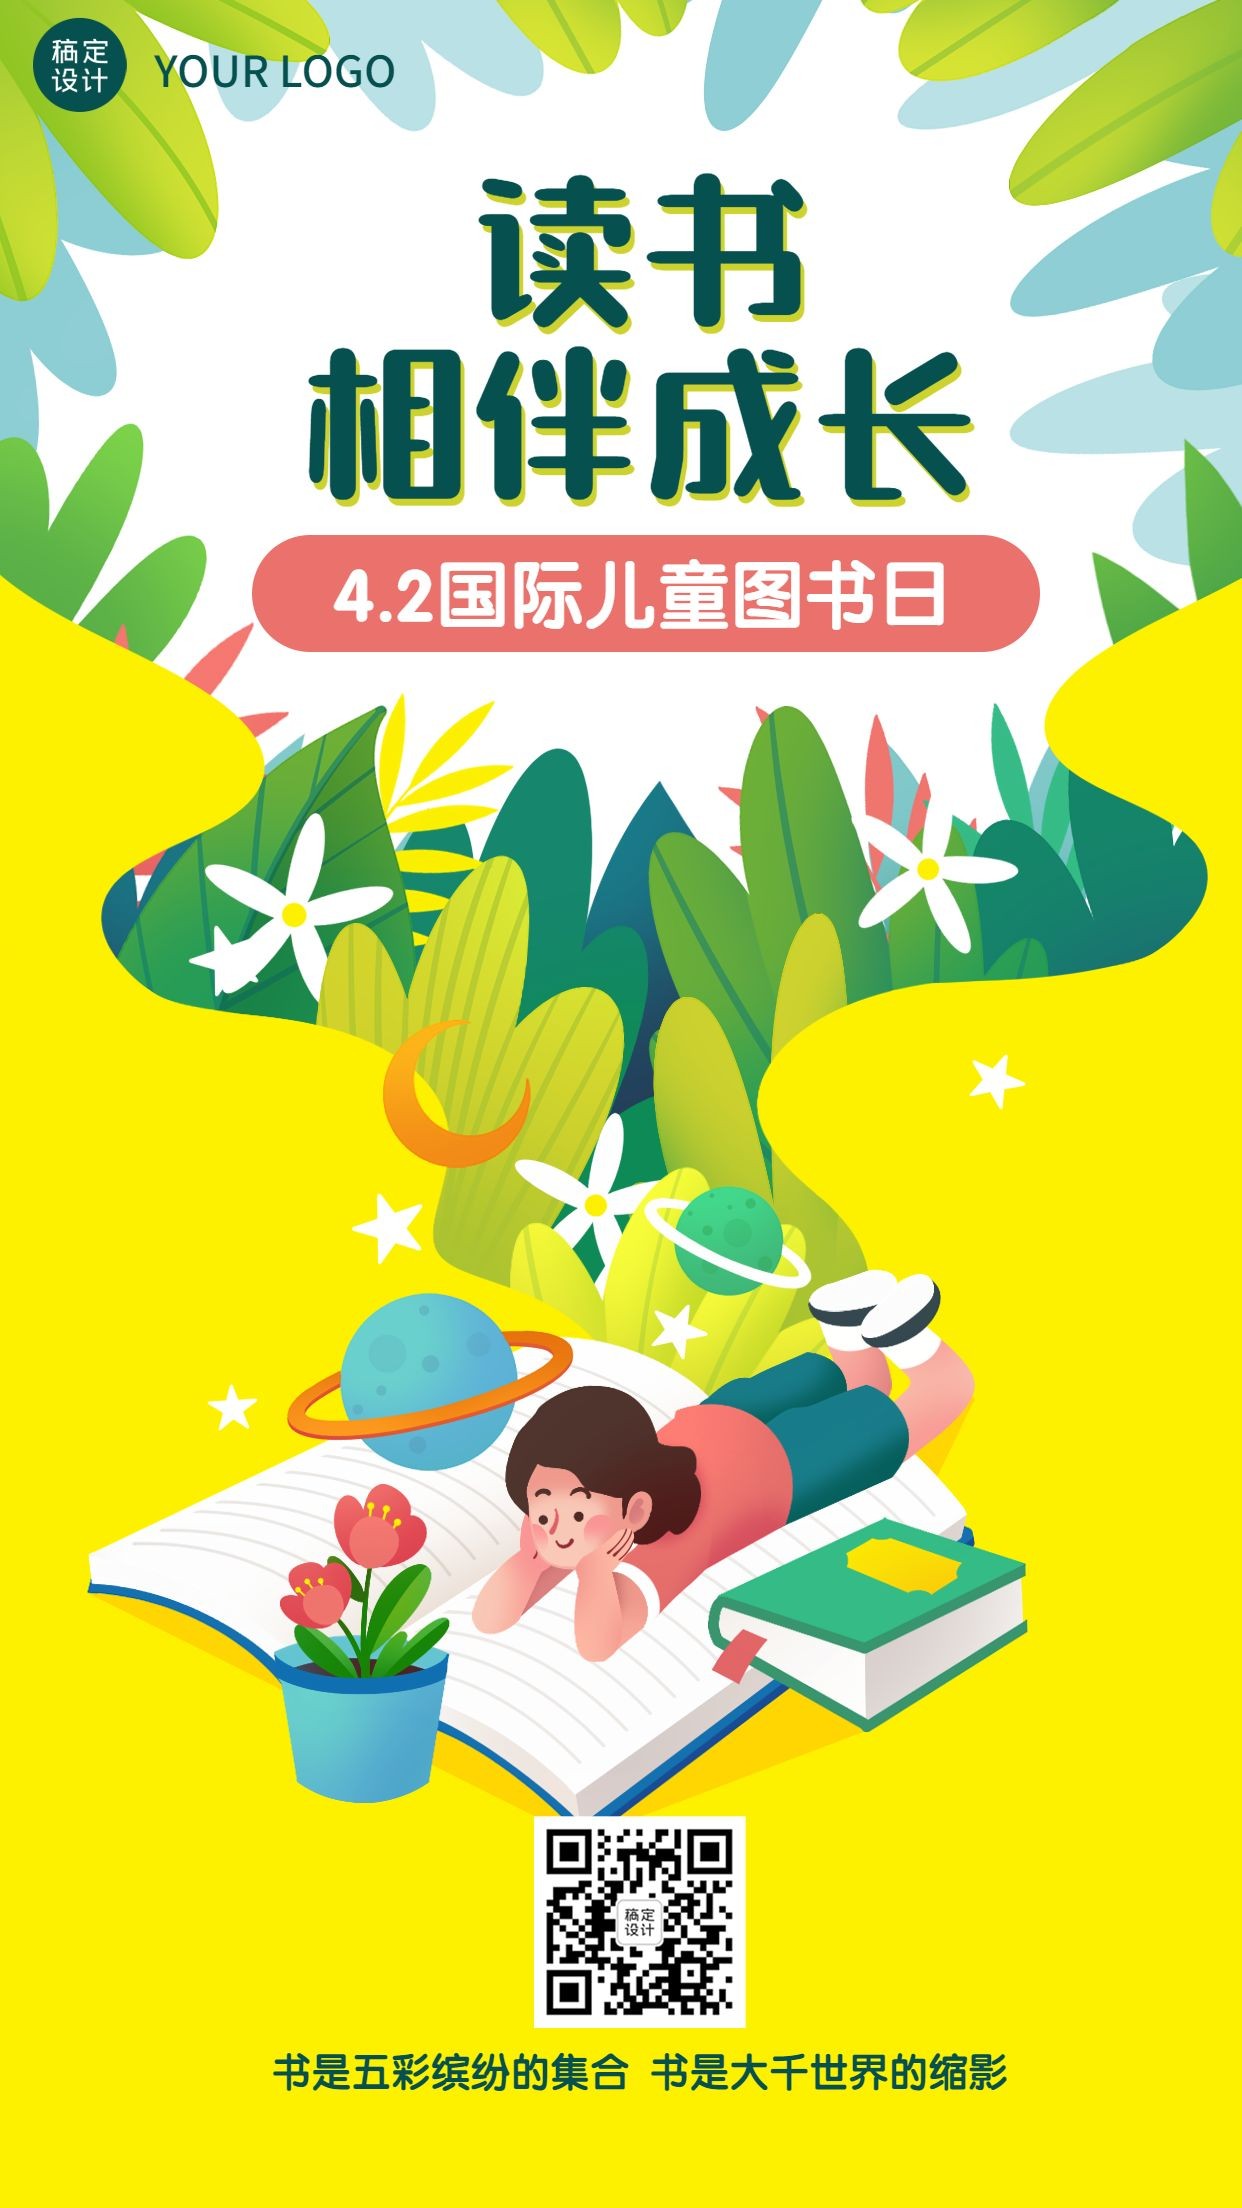 国际儿童图书日节日宣传手机海报预览效果